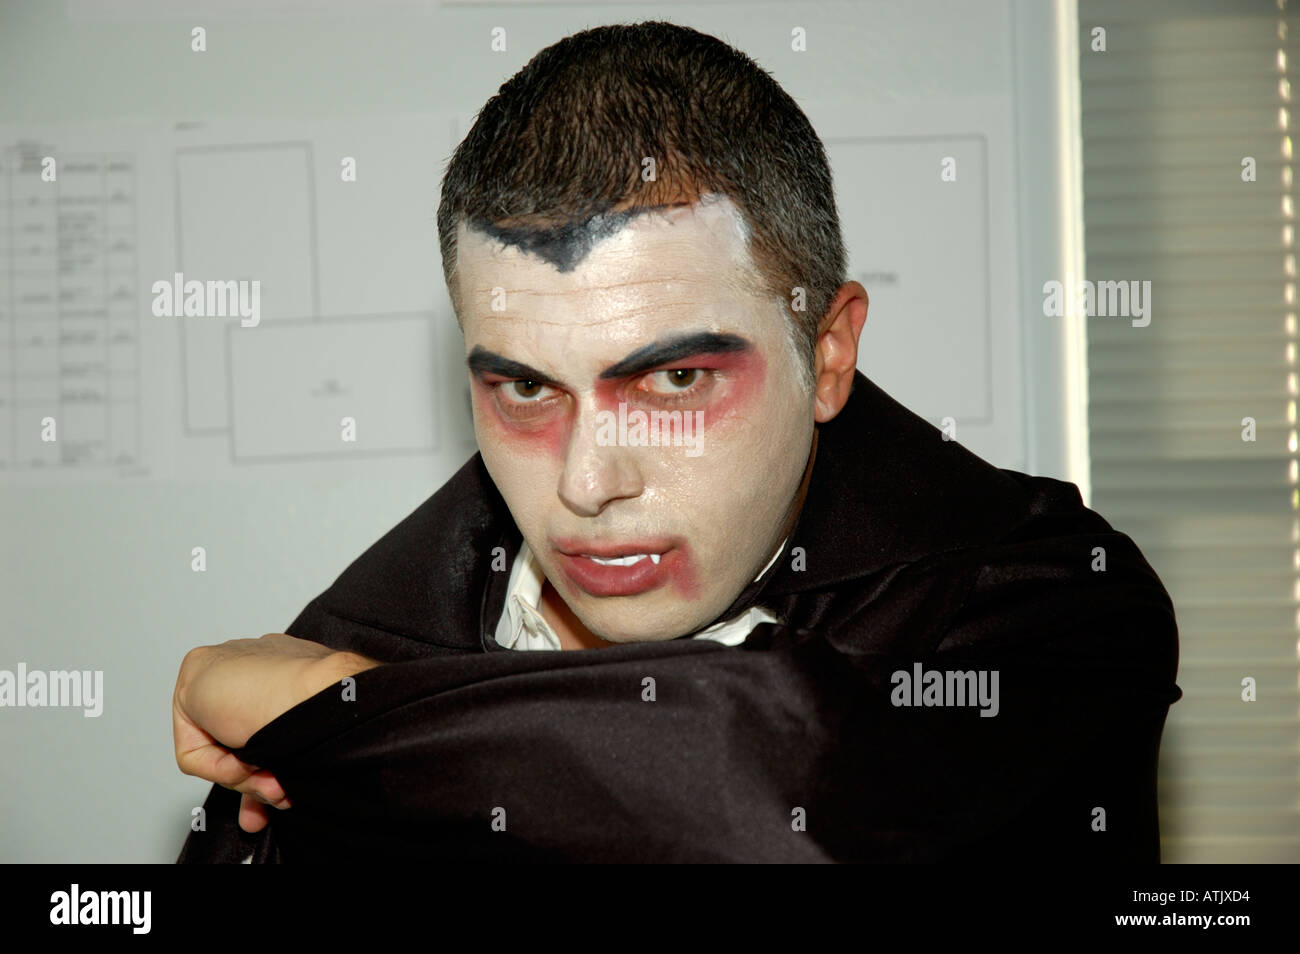 Closeup portrait de l'homme habillé en comte Dracula pour Halloween party Banque D'Images